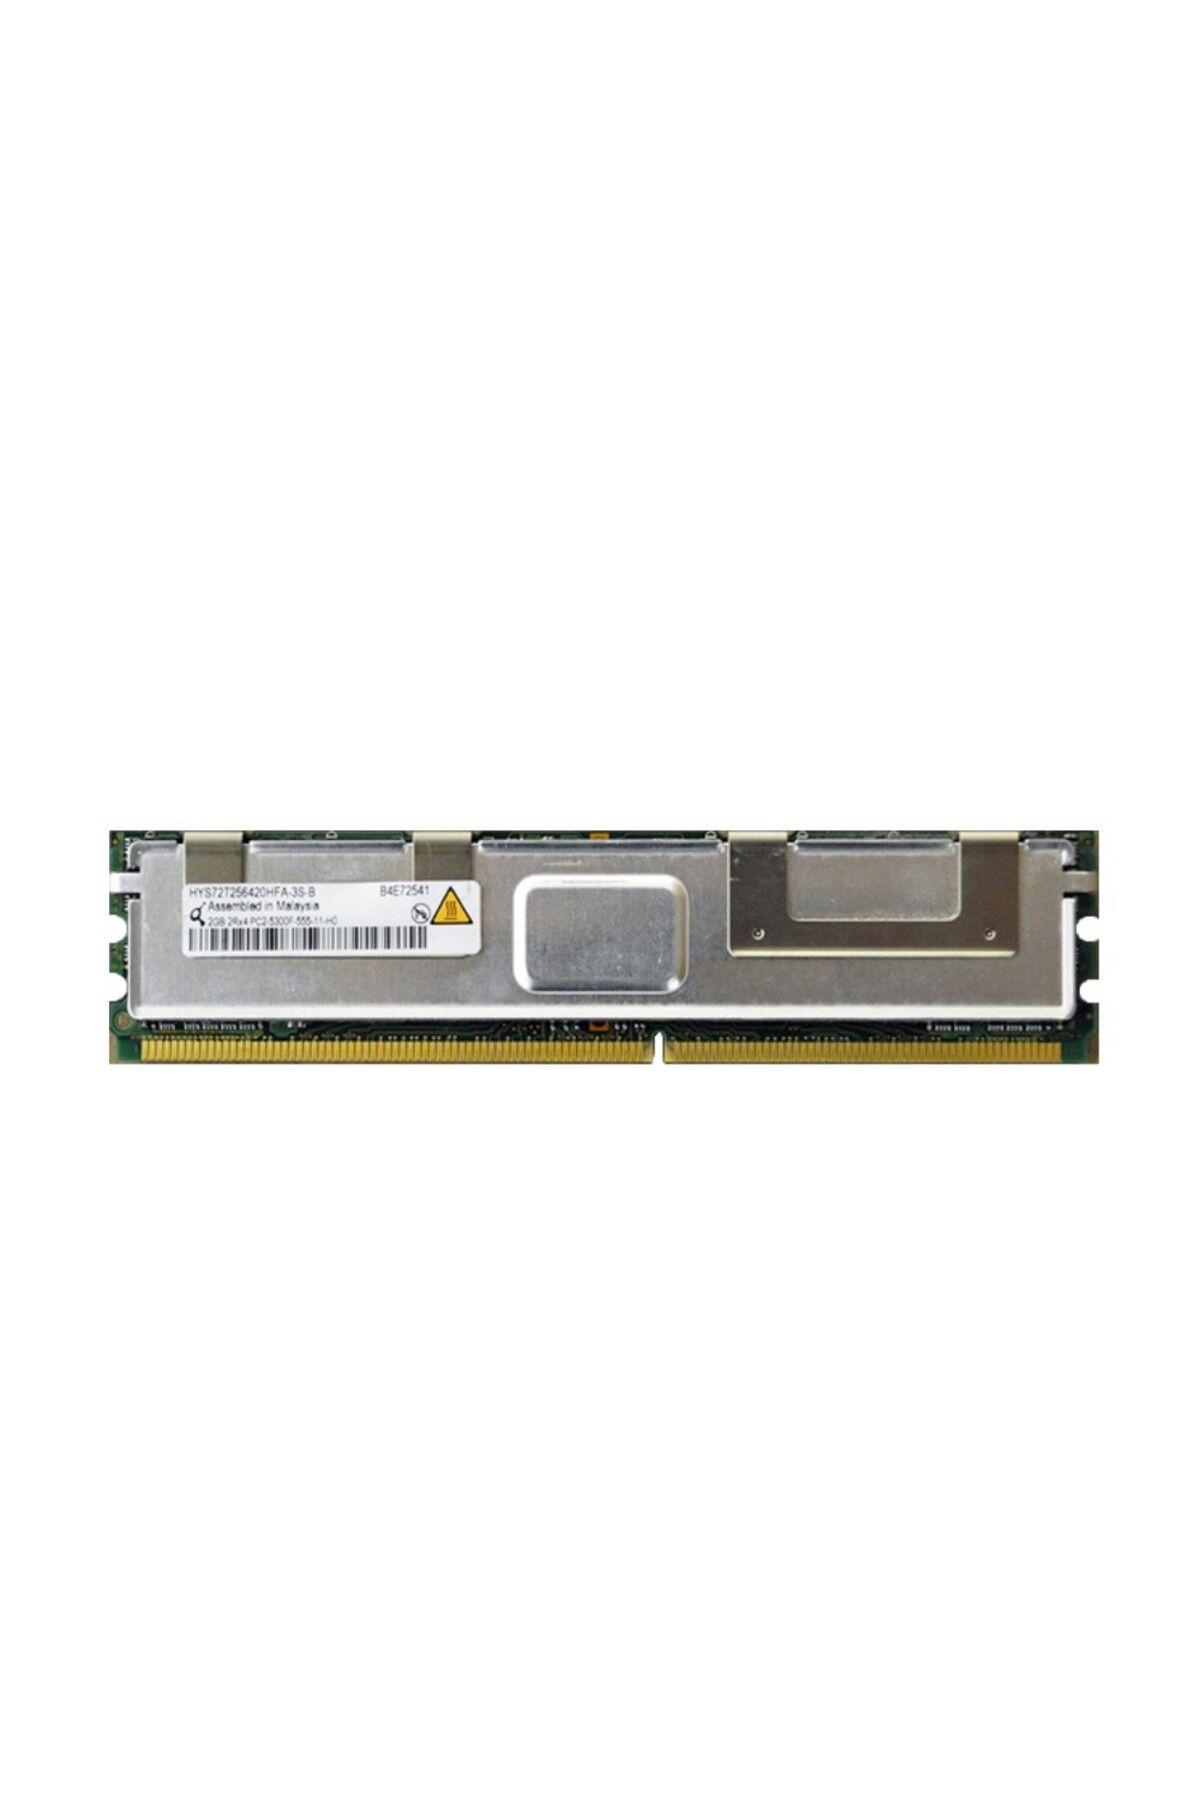 hsy 2GB 2RX4 PC2-5300F Fully Buffered ECC DDR2-667 MEMORY MODULE